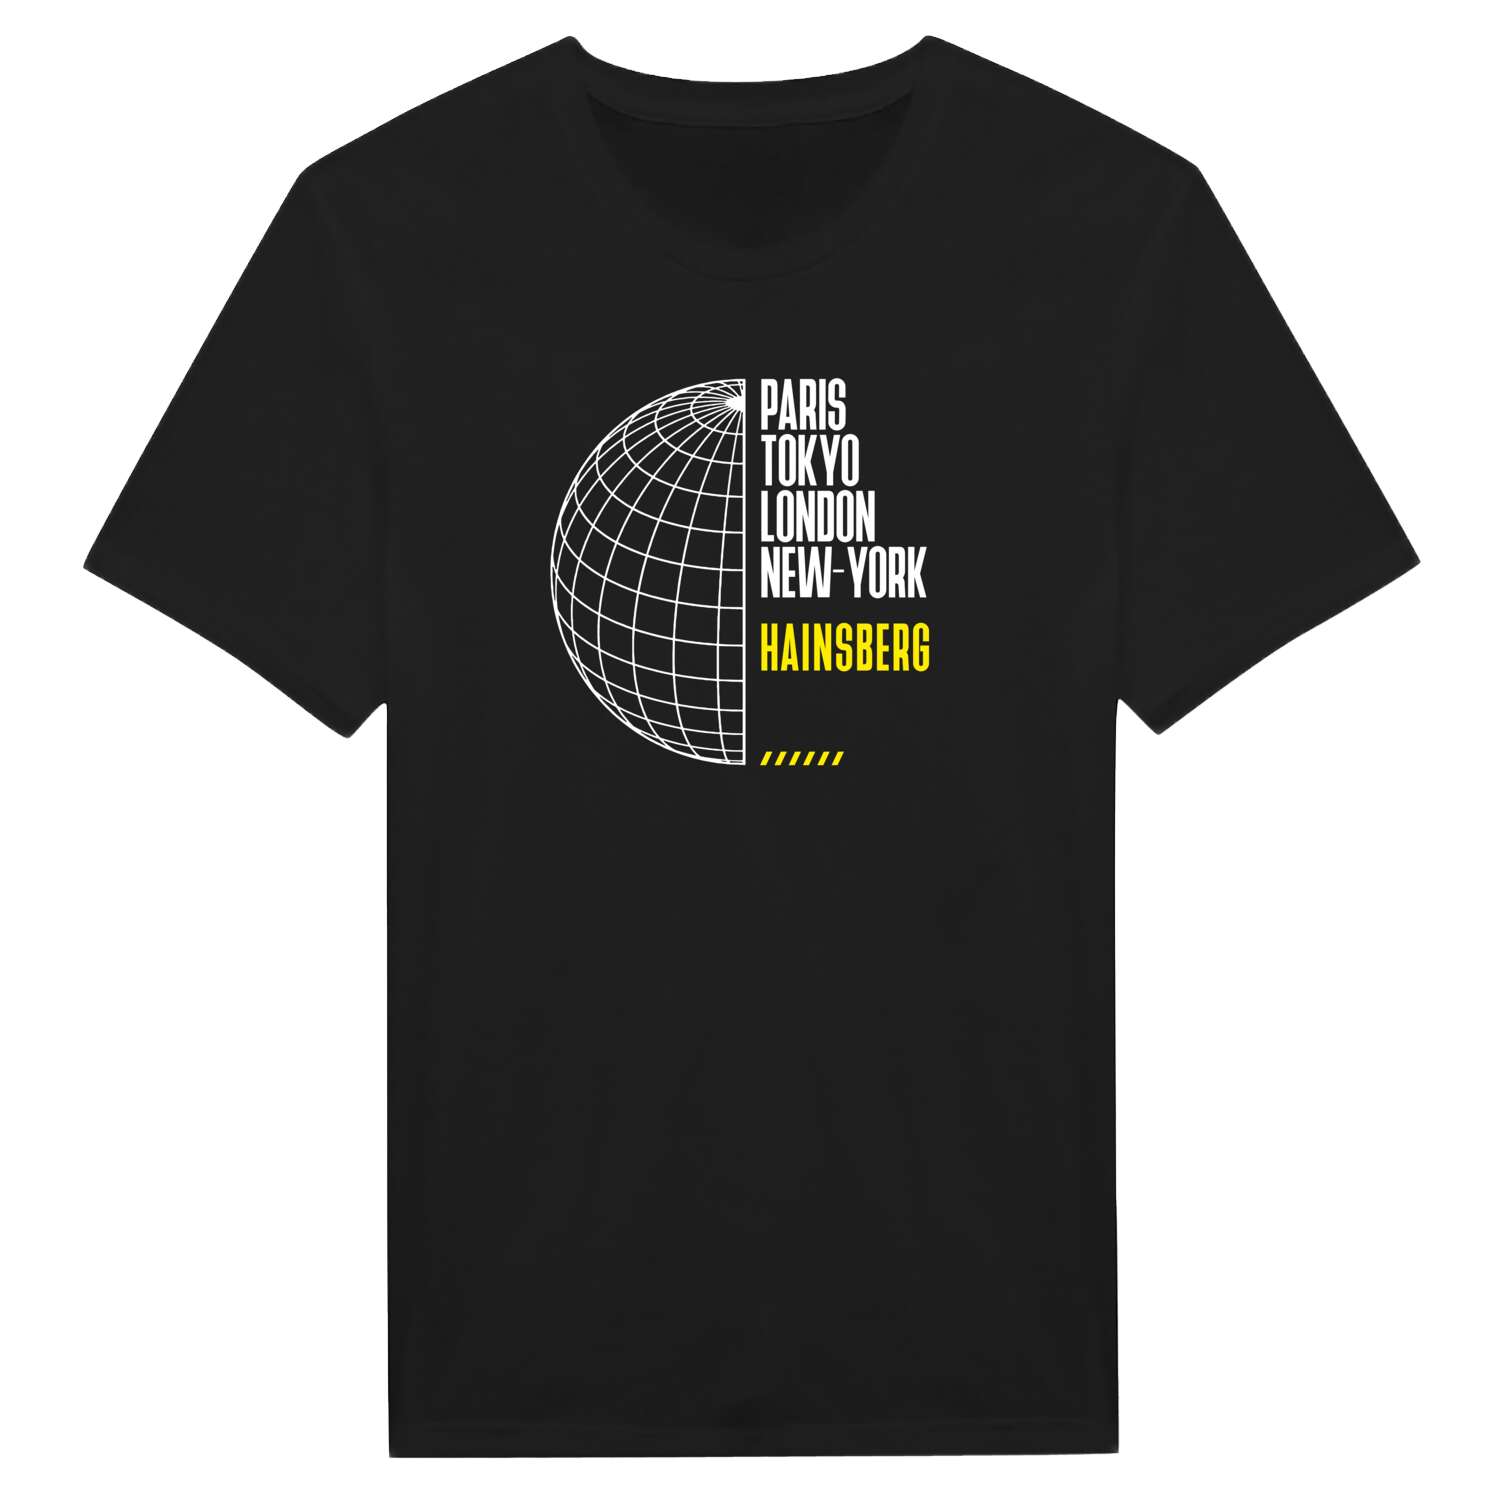 Hainsberg T-Shirt »Paris Tokyo London«